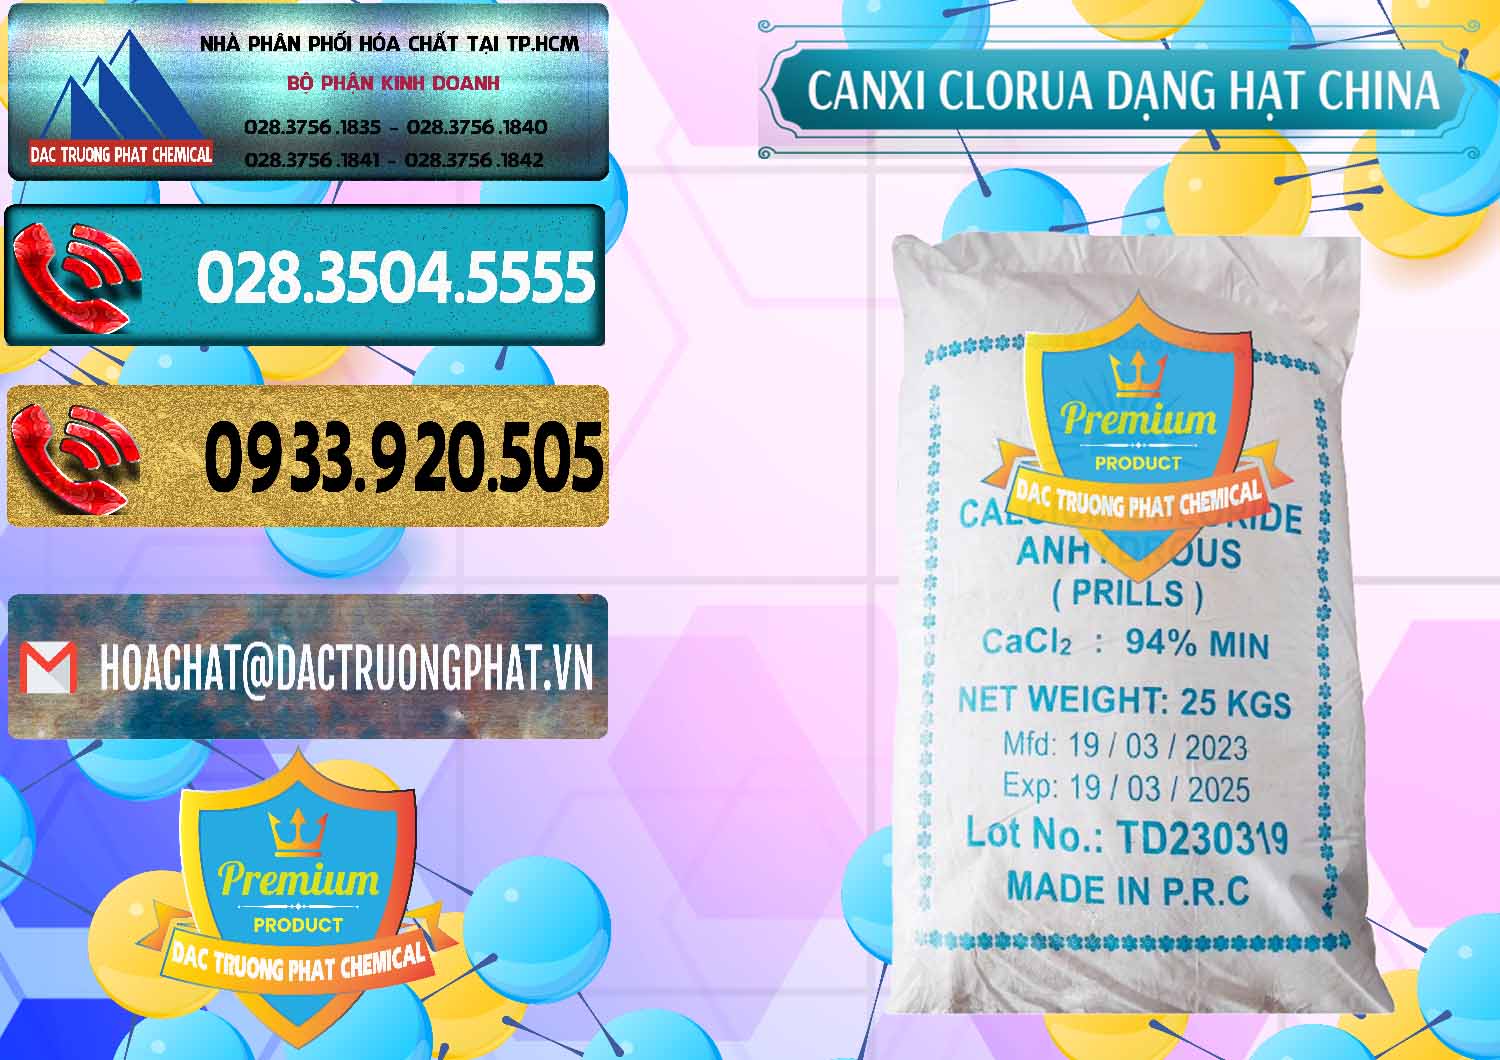 Cty chuyên cung ứng và bán CaCl2 – Canxi Clorua 94% Dạng Hạt Trung Quốc China - 0373 - Đơn vị chuyên nhập khẩu & cung cấp hóa chất tại TP.HCM - hoachatdetnhuom.com